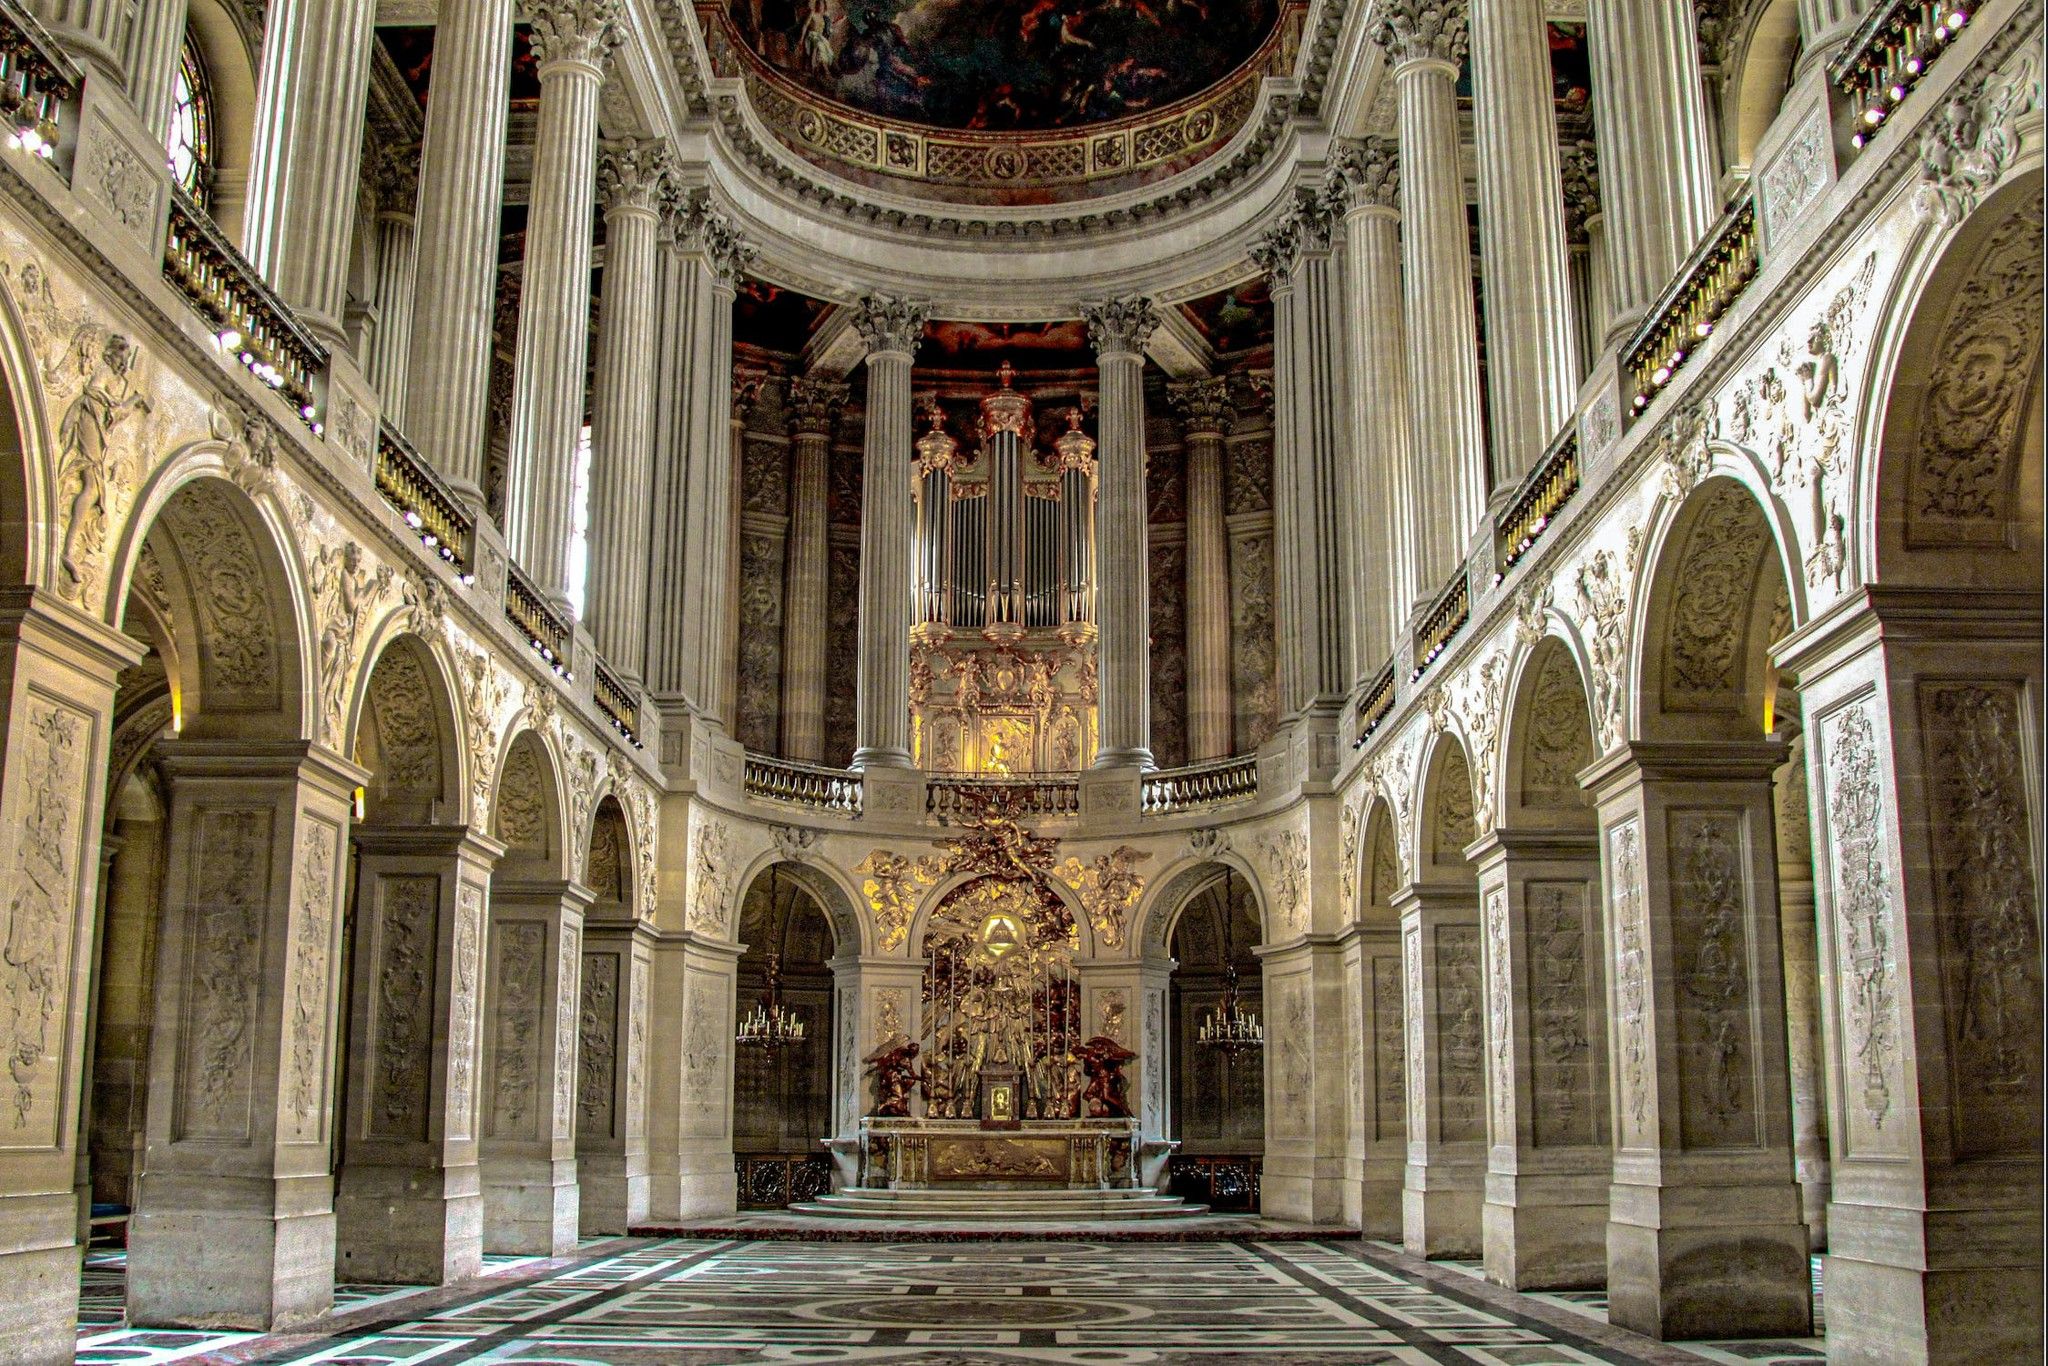 Cung điện Versailles là tuyệt tác dưới thời Vua Louis XIV